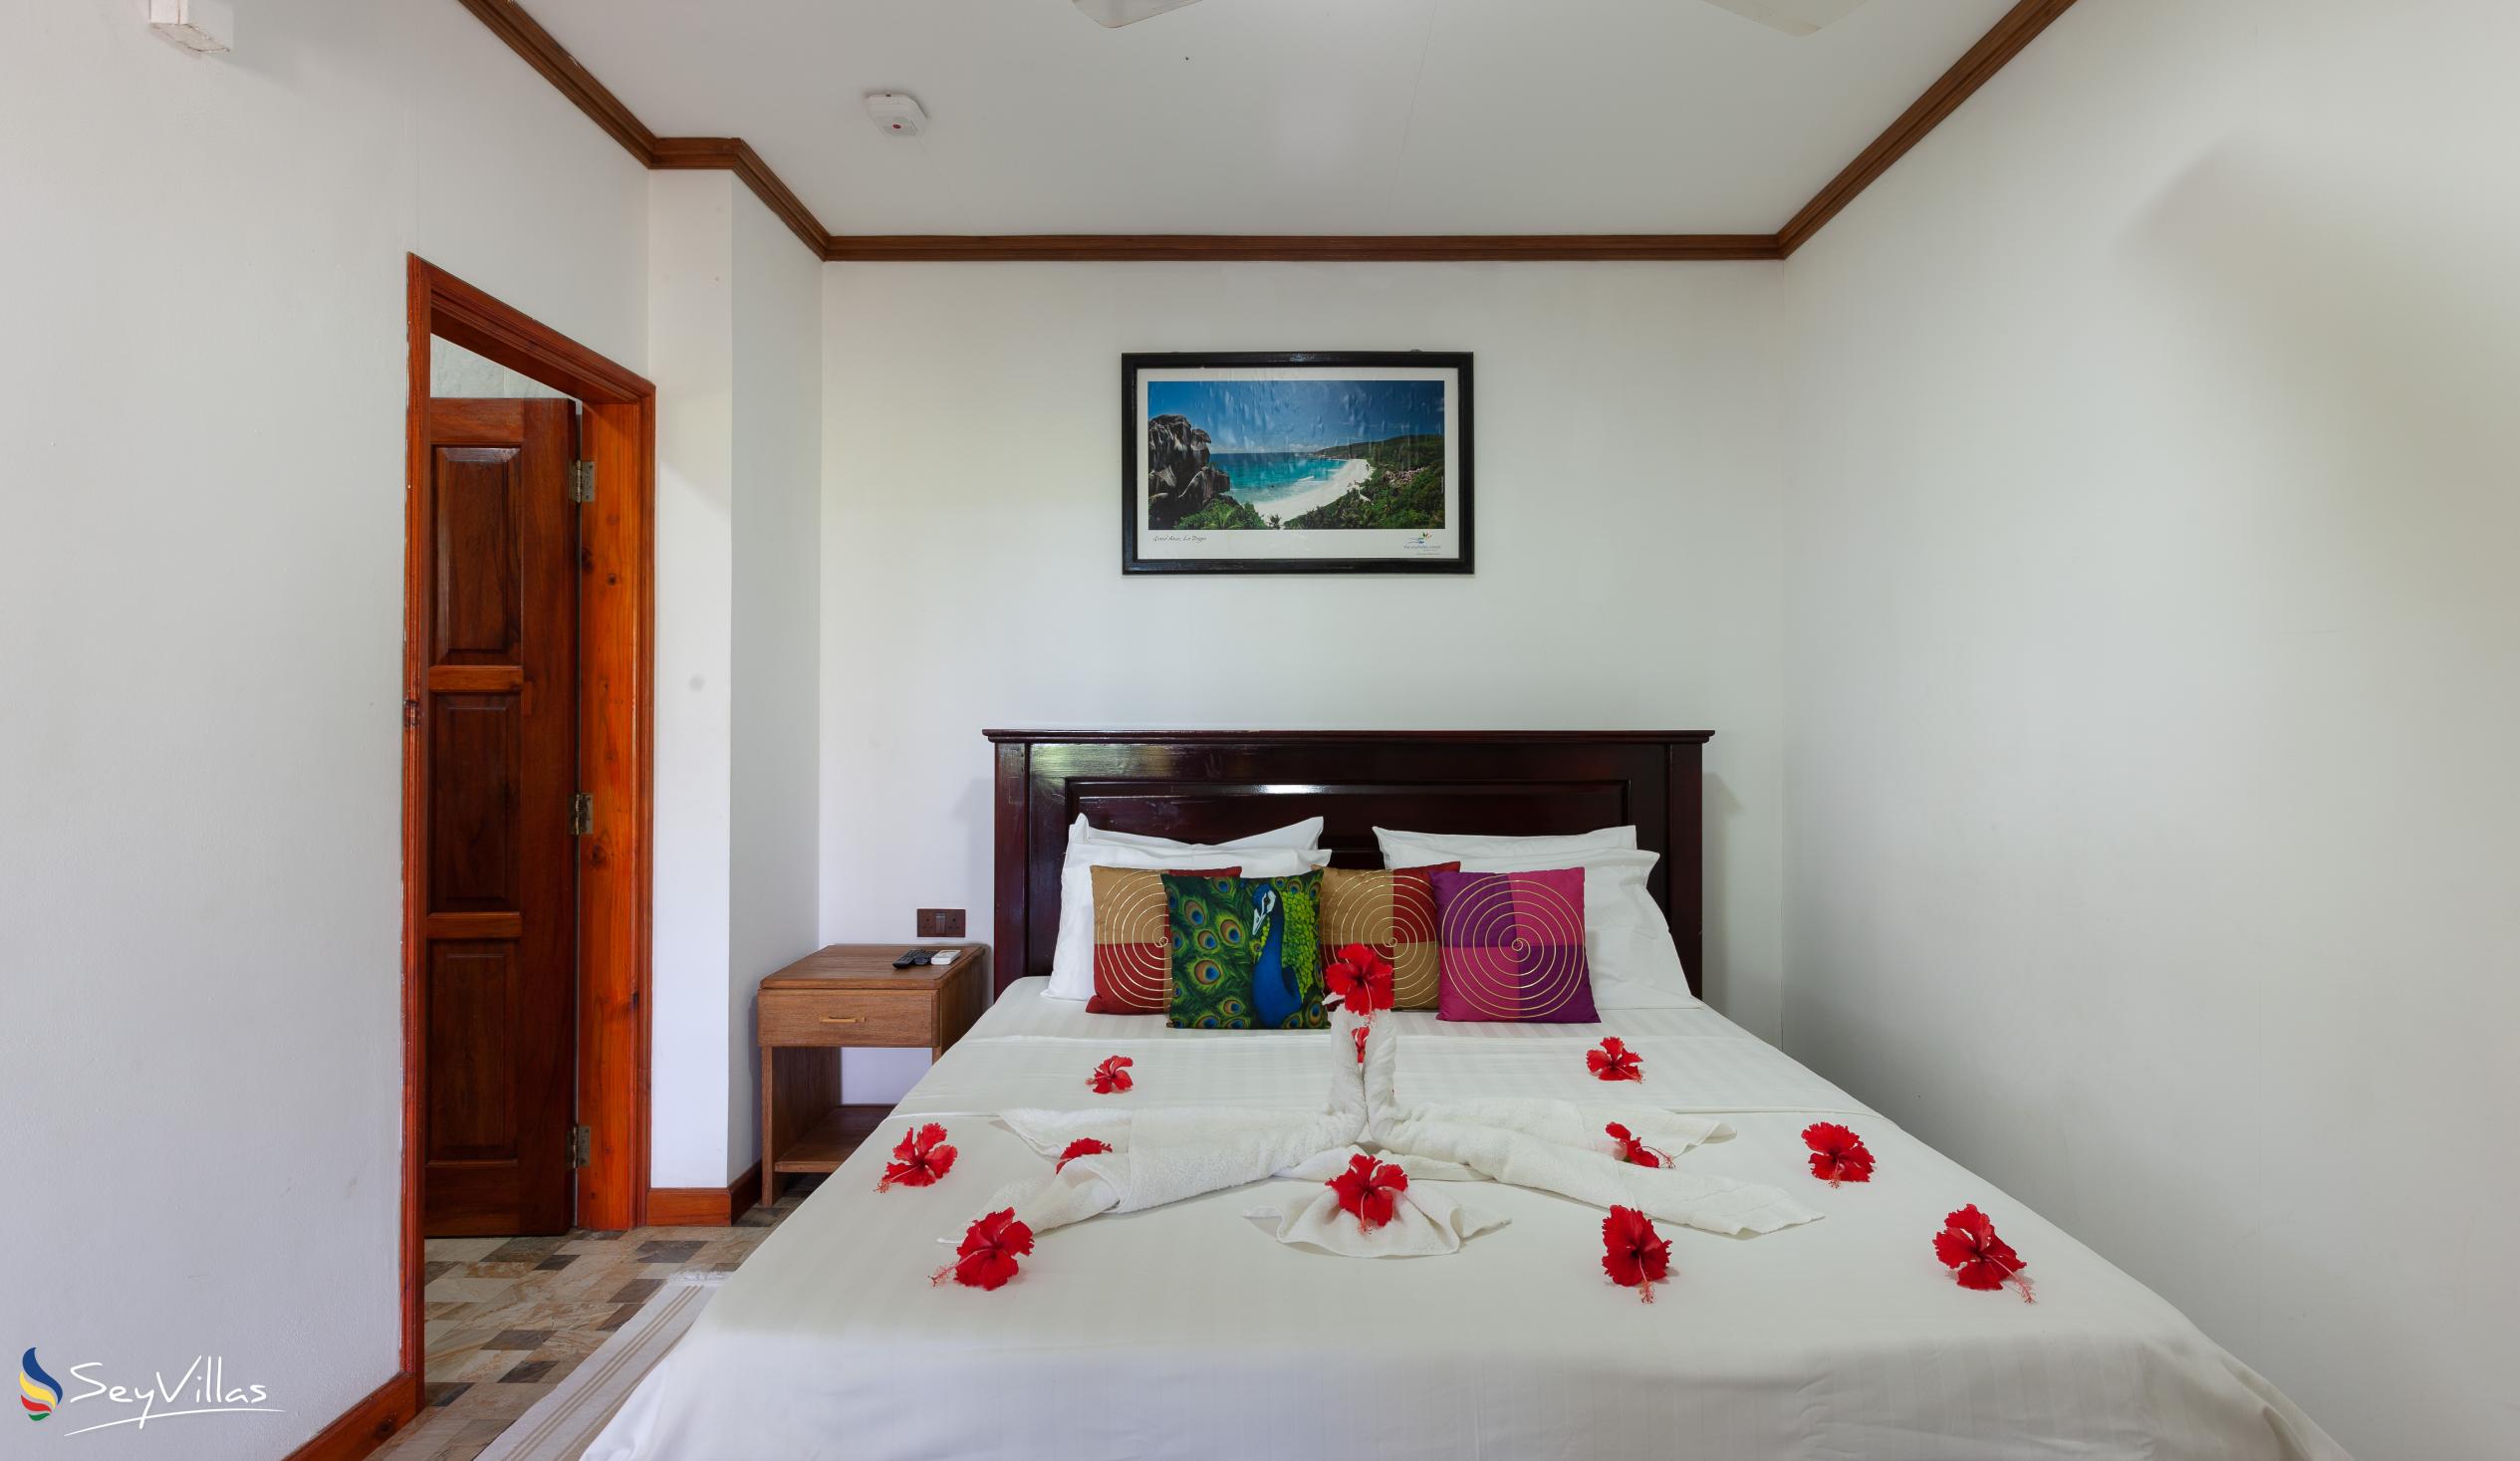 Foto 20: Bwaver Cottage - Doppelzimmer mit Gartenblick - La Digue (Seychellen)